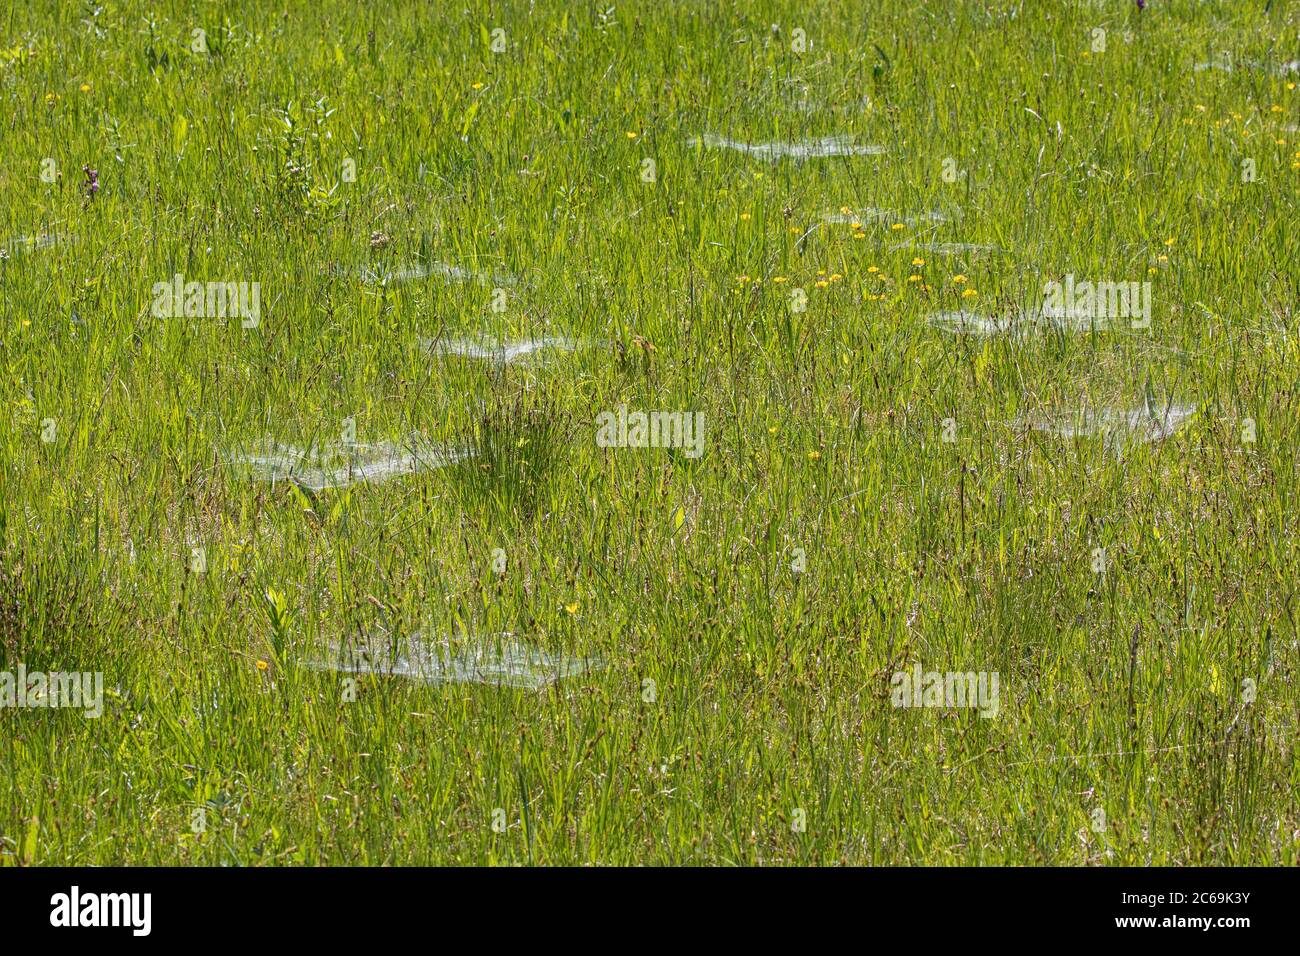 Herbe à l'entonnoir-tisserand, araignée labyrinthe (Agelena labyrinthica), prairie de marais avec plusieurs toiles de tube, Allemagne, Bavière, Staffelseemoore Banque D'Images